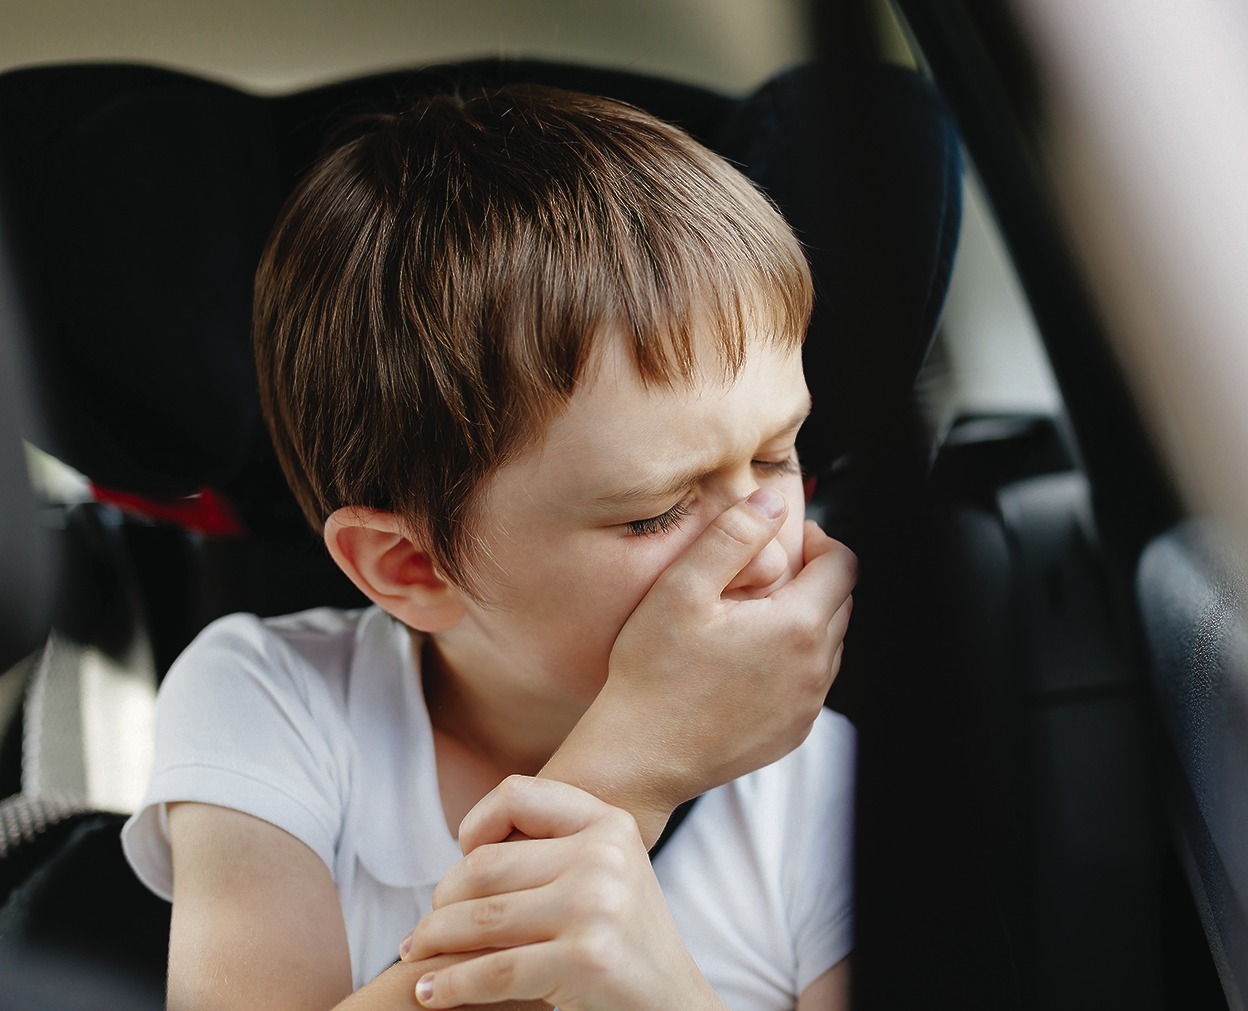 Тошнит в машине что делать: Ребенка укачивает в машине. – клиника «Семейный доктор».